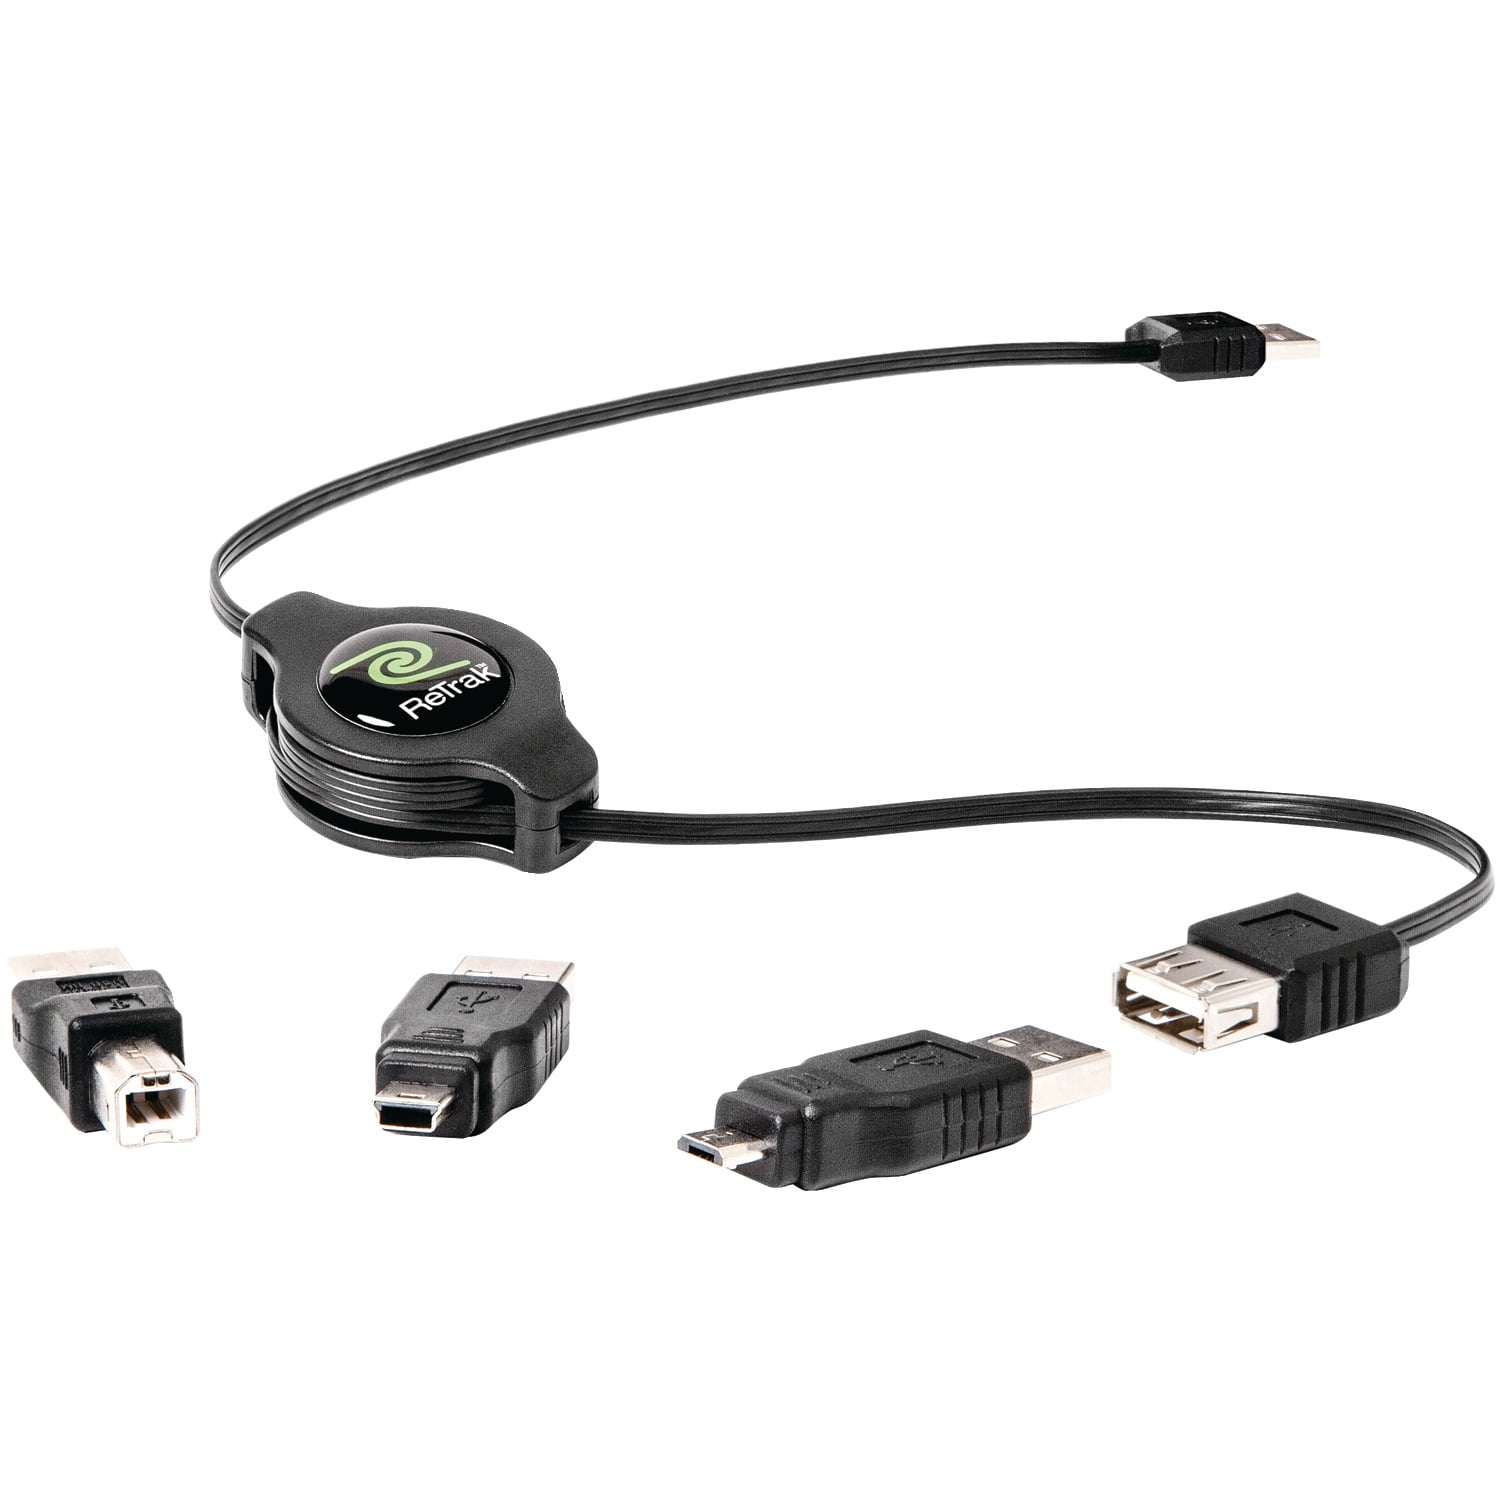 ReTrak ETPRU6M Universal USB Extension Retractable Cord 